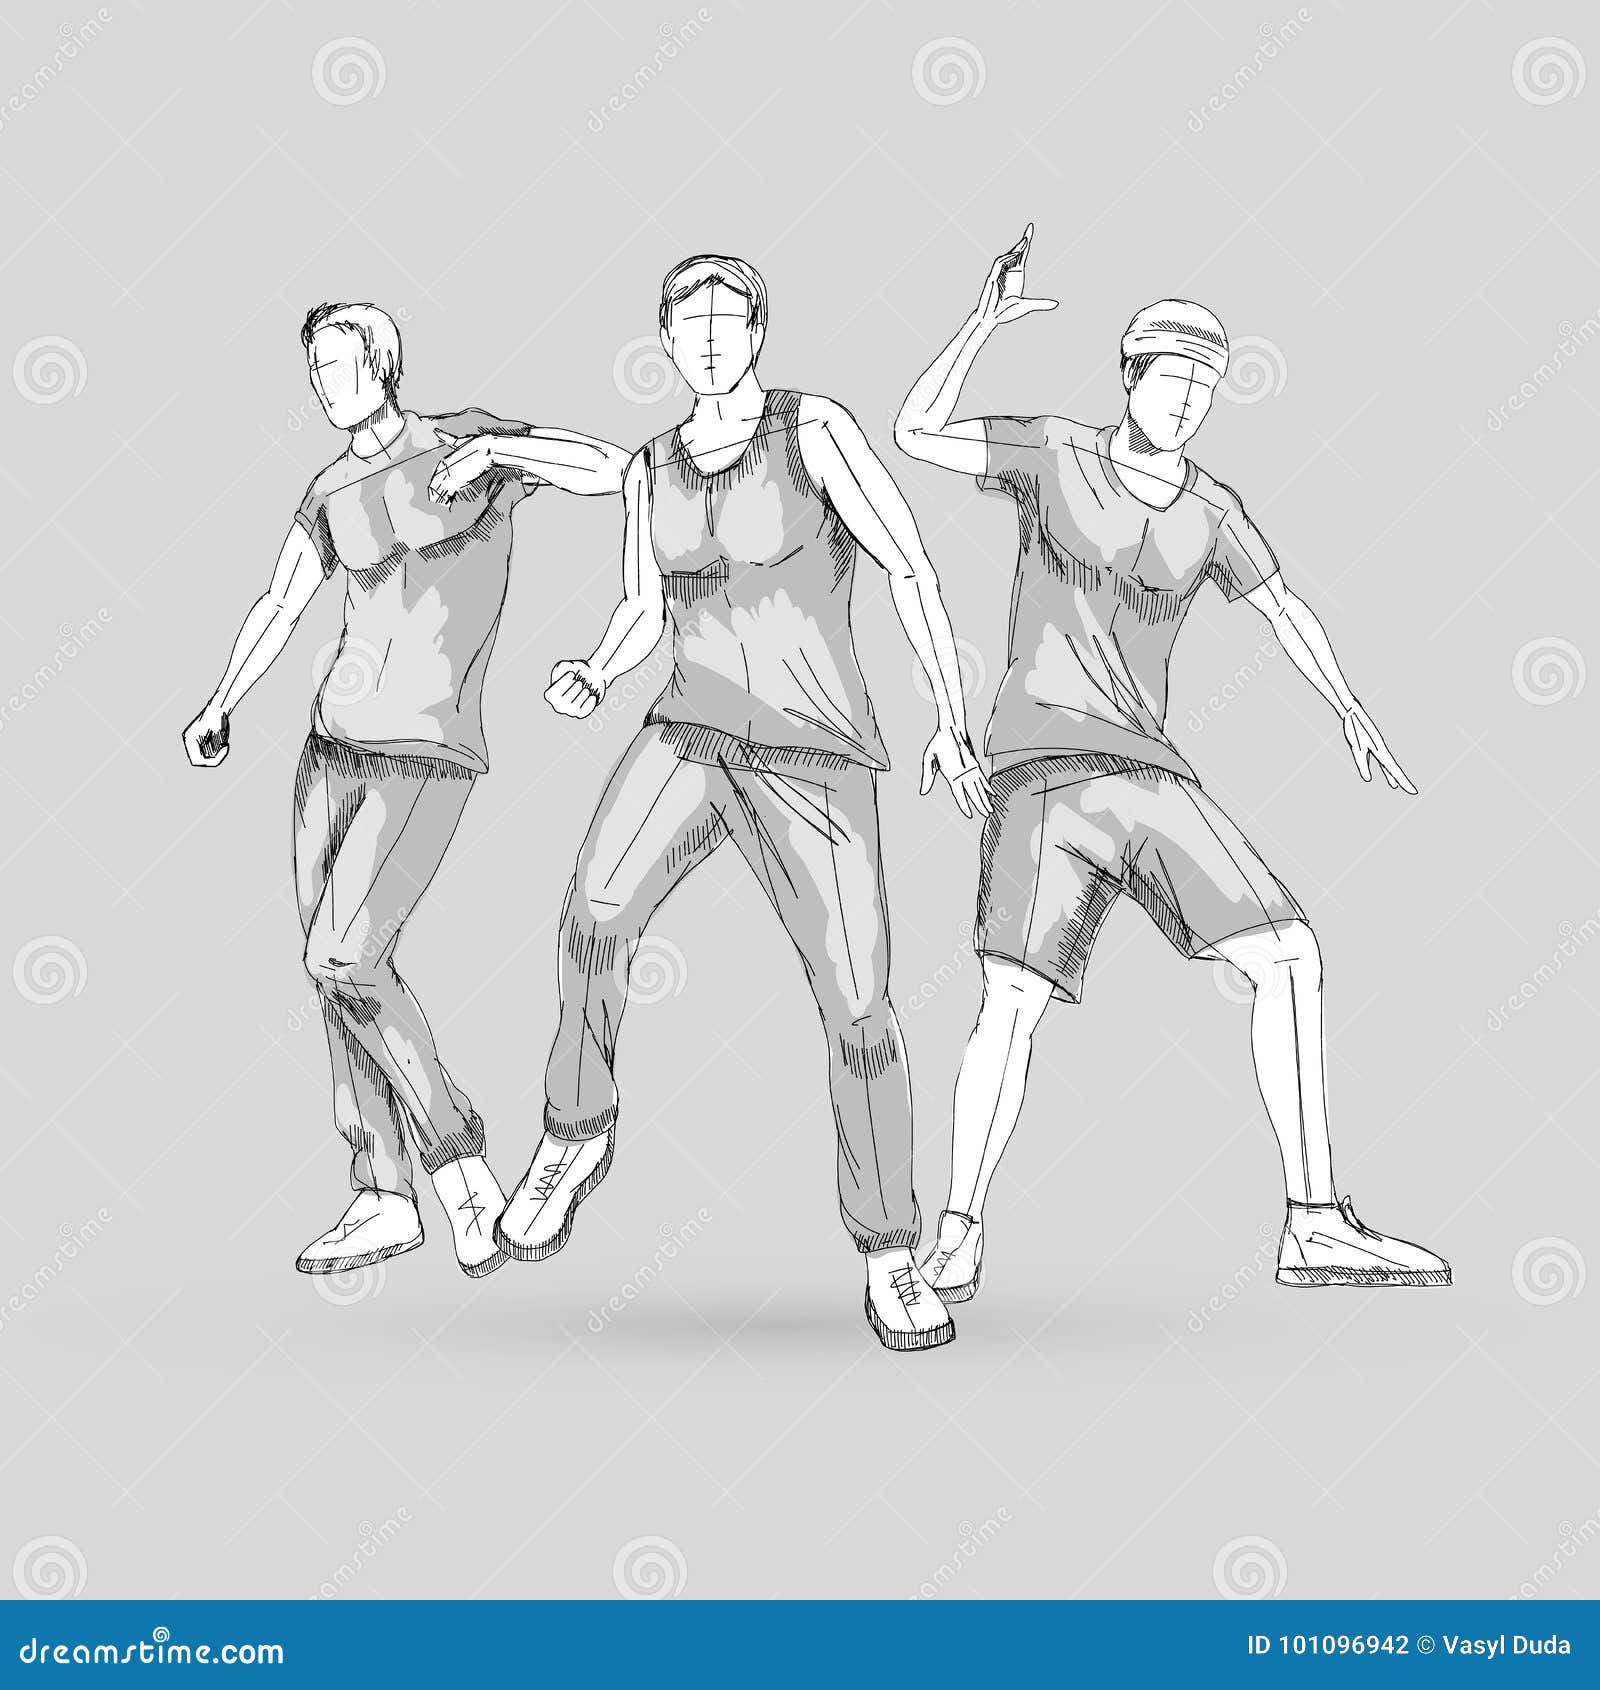 Dancing Drawing Stock Illustrations – 25,765 Dancing Drawing Stock  Illustrations, Vectors & Clipart - Dreamstime